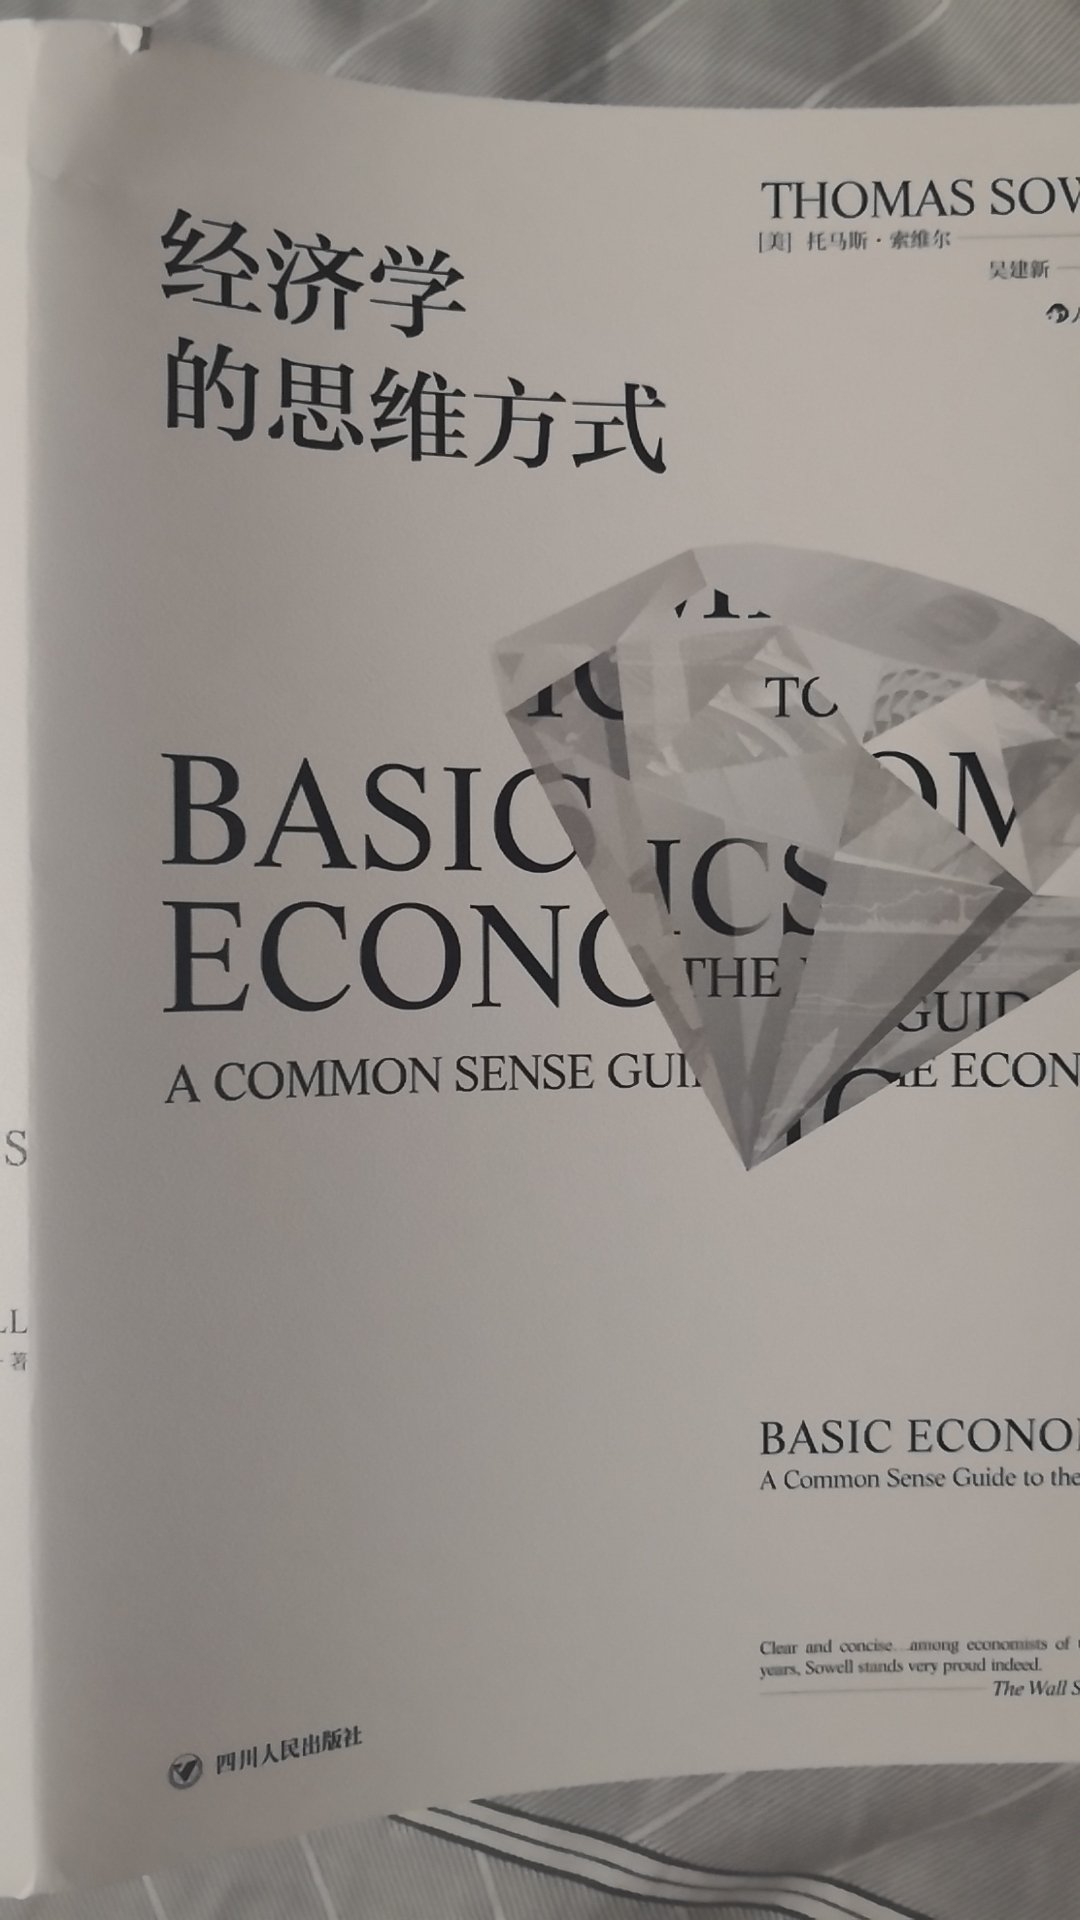 学经济学，研究经济形势，作为一个普通人，了解这些也是很重要的，这本书也是一大牛写的。值得看